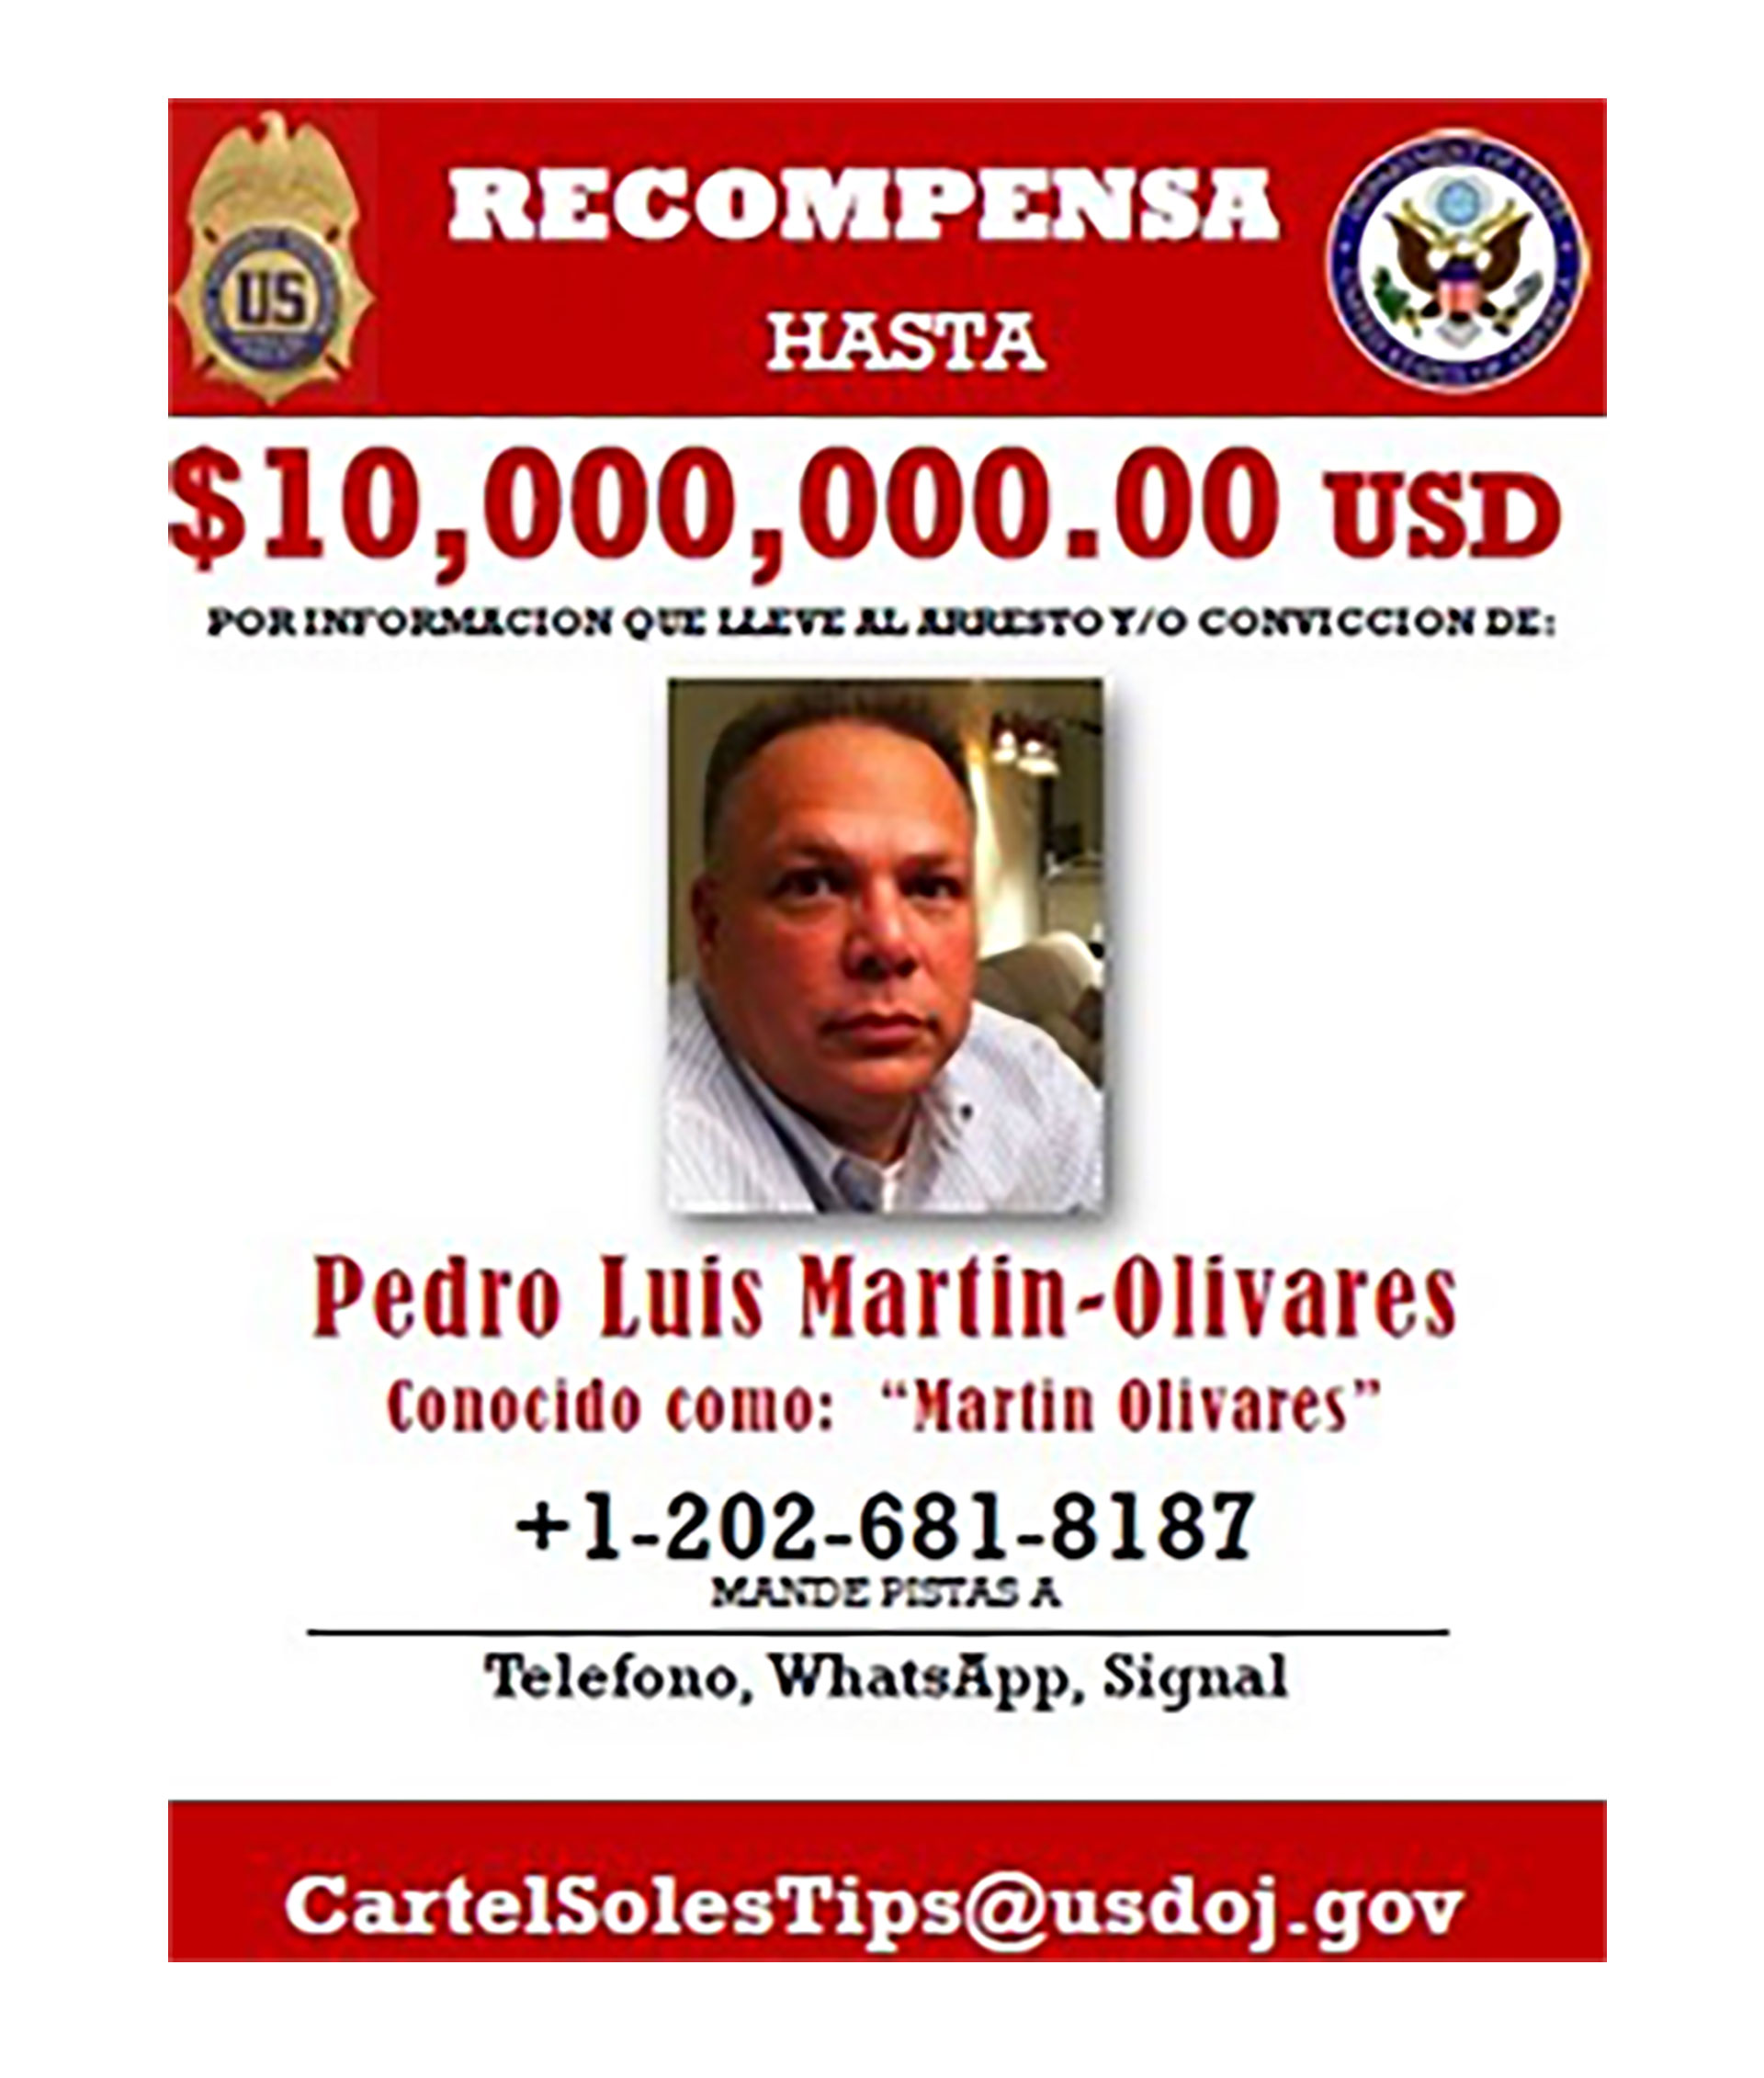 EEUU ofrece recompensa de 10 millones de dólares por Pedro Luis Martin